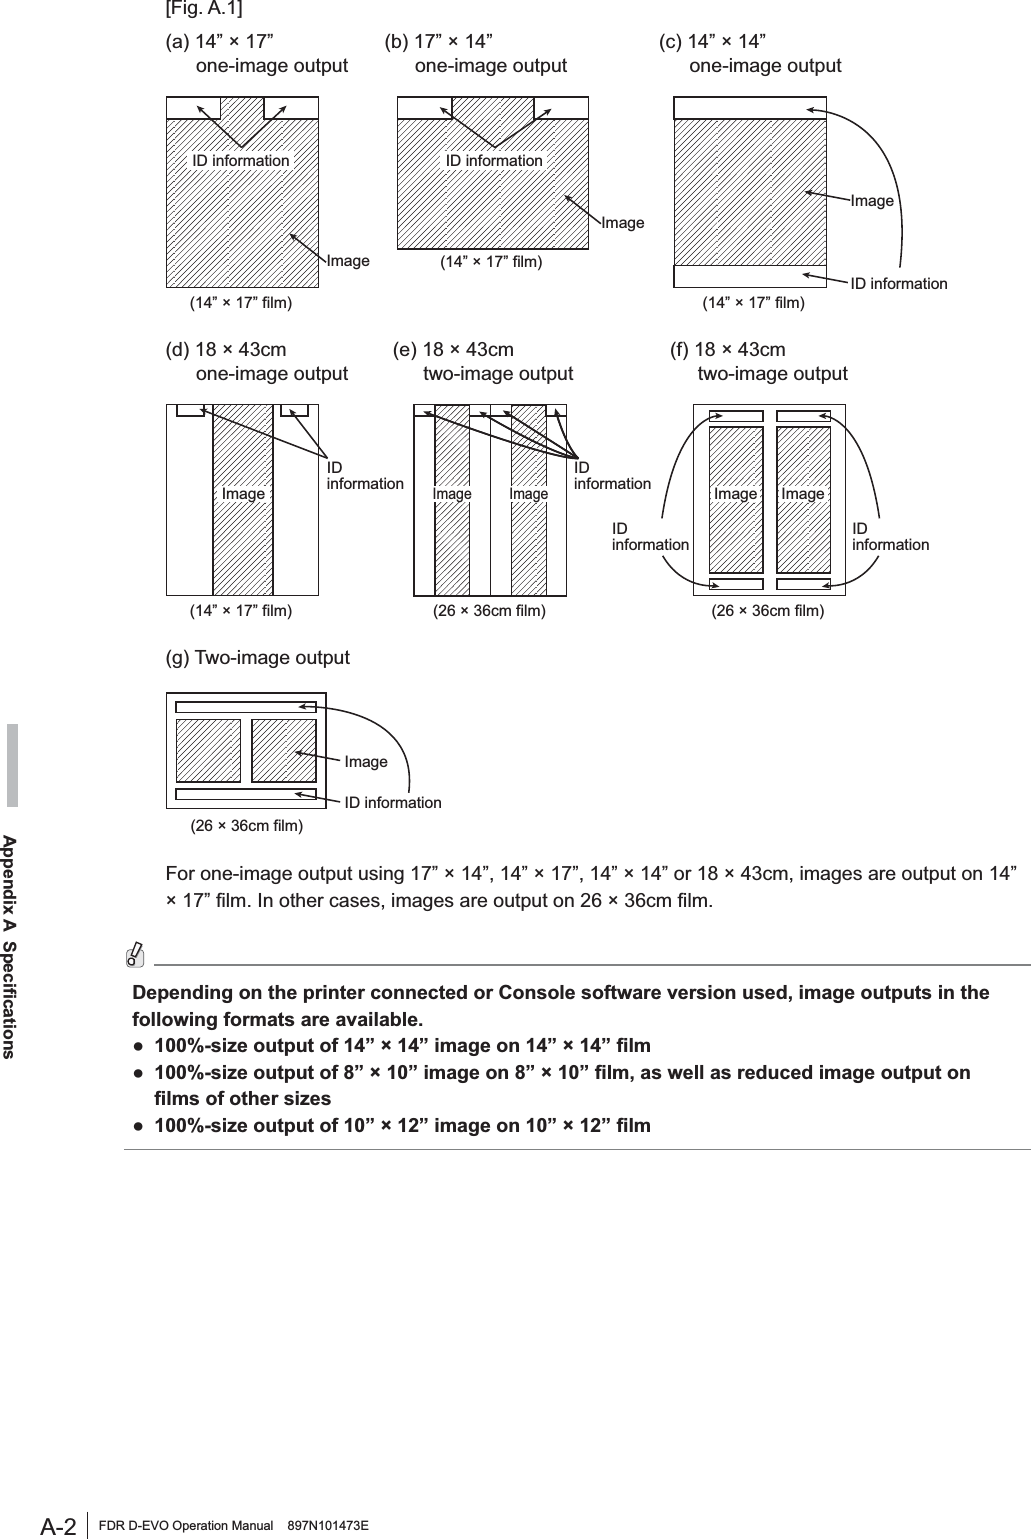 A-2 FDR D-EVO Operation Manual    897N101473EAppendix A  Specifications[Fig. A.1](a) 14” × 17” (b) 17” × 14” (c) 14” × 14”one-image output one-image output one-image output(14” × 17” film) (14” × 17” film)(14” × 17” film)ID informationImageImageID informationID informationImage(d) 18 × 43cm (e) 18 × 43cm (f) 18 × 43cmone-image output two-image output two-image output(14” × 17” film)IDinformationIDinformationIDinformationIDinformation(26 × 36cm film)(26 × 36cm film)ImageImageImageImageImage(g) Two-image outputID informationImage(26 × 36cm film)For one-image output using 17” × 14”, 14” × 17”, 14” × 14” or 18 × 43cm, images are output on 14” î´¿OP,QRWKHUFDVHVLPDJHVDUHRXWSXWRQîFP¿OP&apos;HSHQGLQJRQWKHSULQWHUFRQQHFWHGRU&amp;RQVROHVRIWZDUHYHUVLRQXVHGLPDJHRXWSXWVLQWKHIROORZLQJIRUPDWVDUHDYDLODEOHƔ VL]HRXWSXWRI´î´LPDJHRQ´î´¿OPƔ VL]HRXWSXWRI´î´LPDJHRQ´î´¿OPDVZHOODVUHGXFHGLPDJHRXWSXWRQ¿OPVRIRWKHUVL]HVƔ VL]HRXWSXWRI´î´LPDJHRQ´î´¿OP